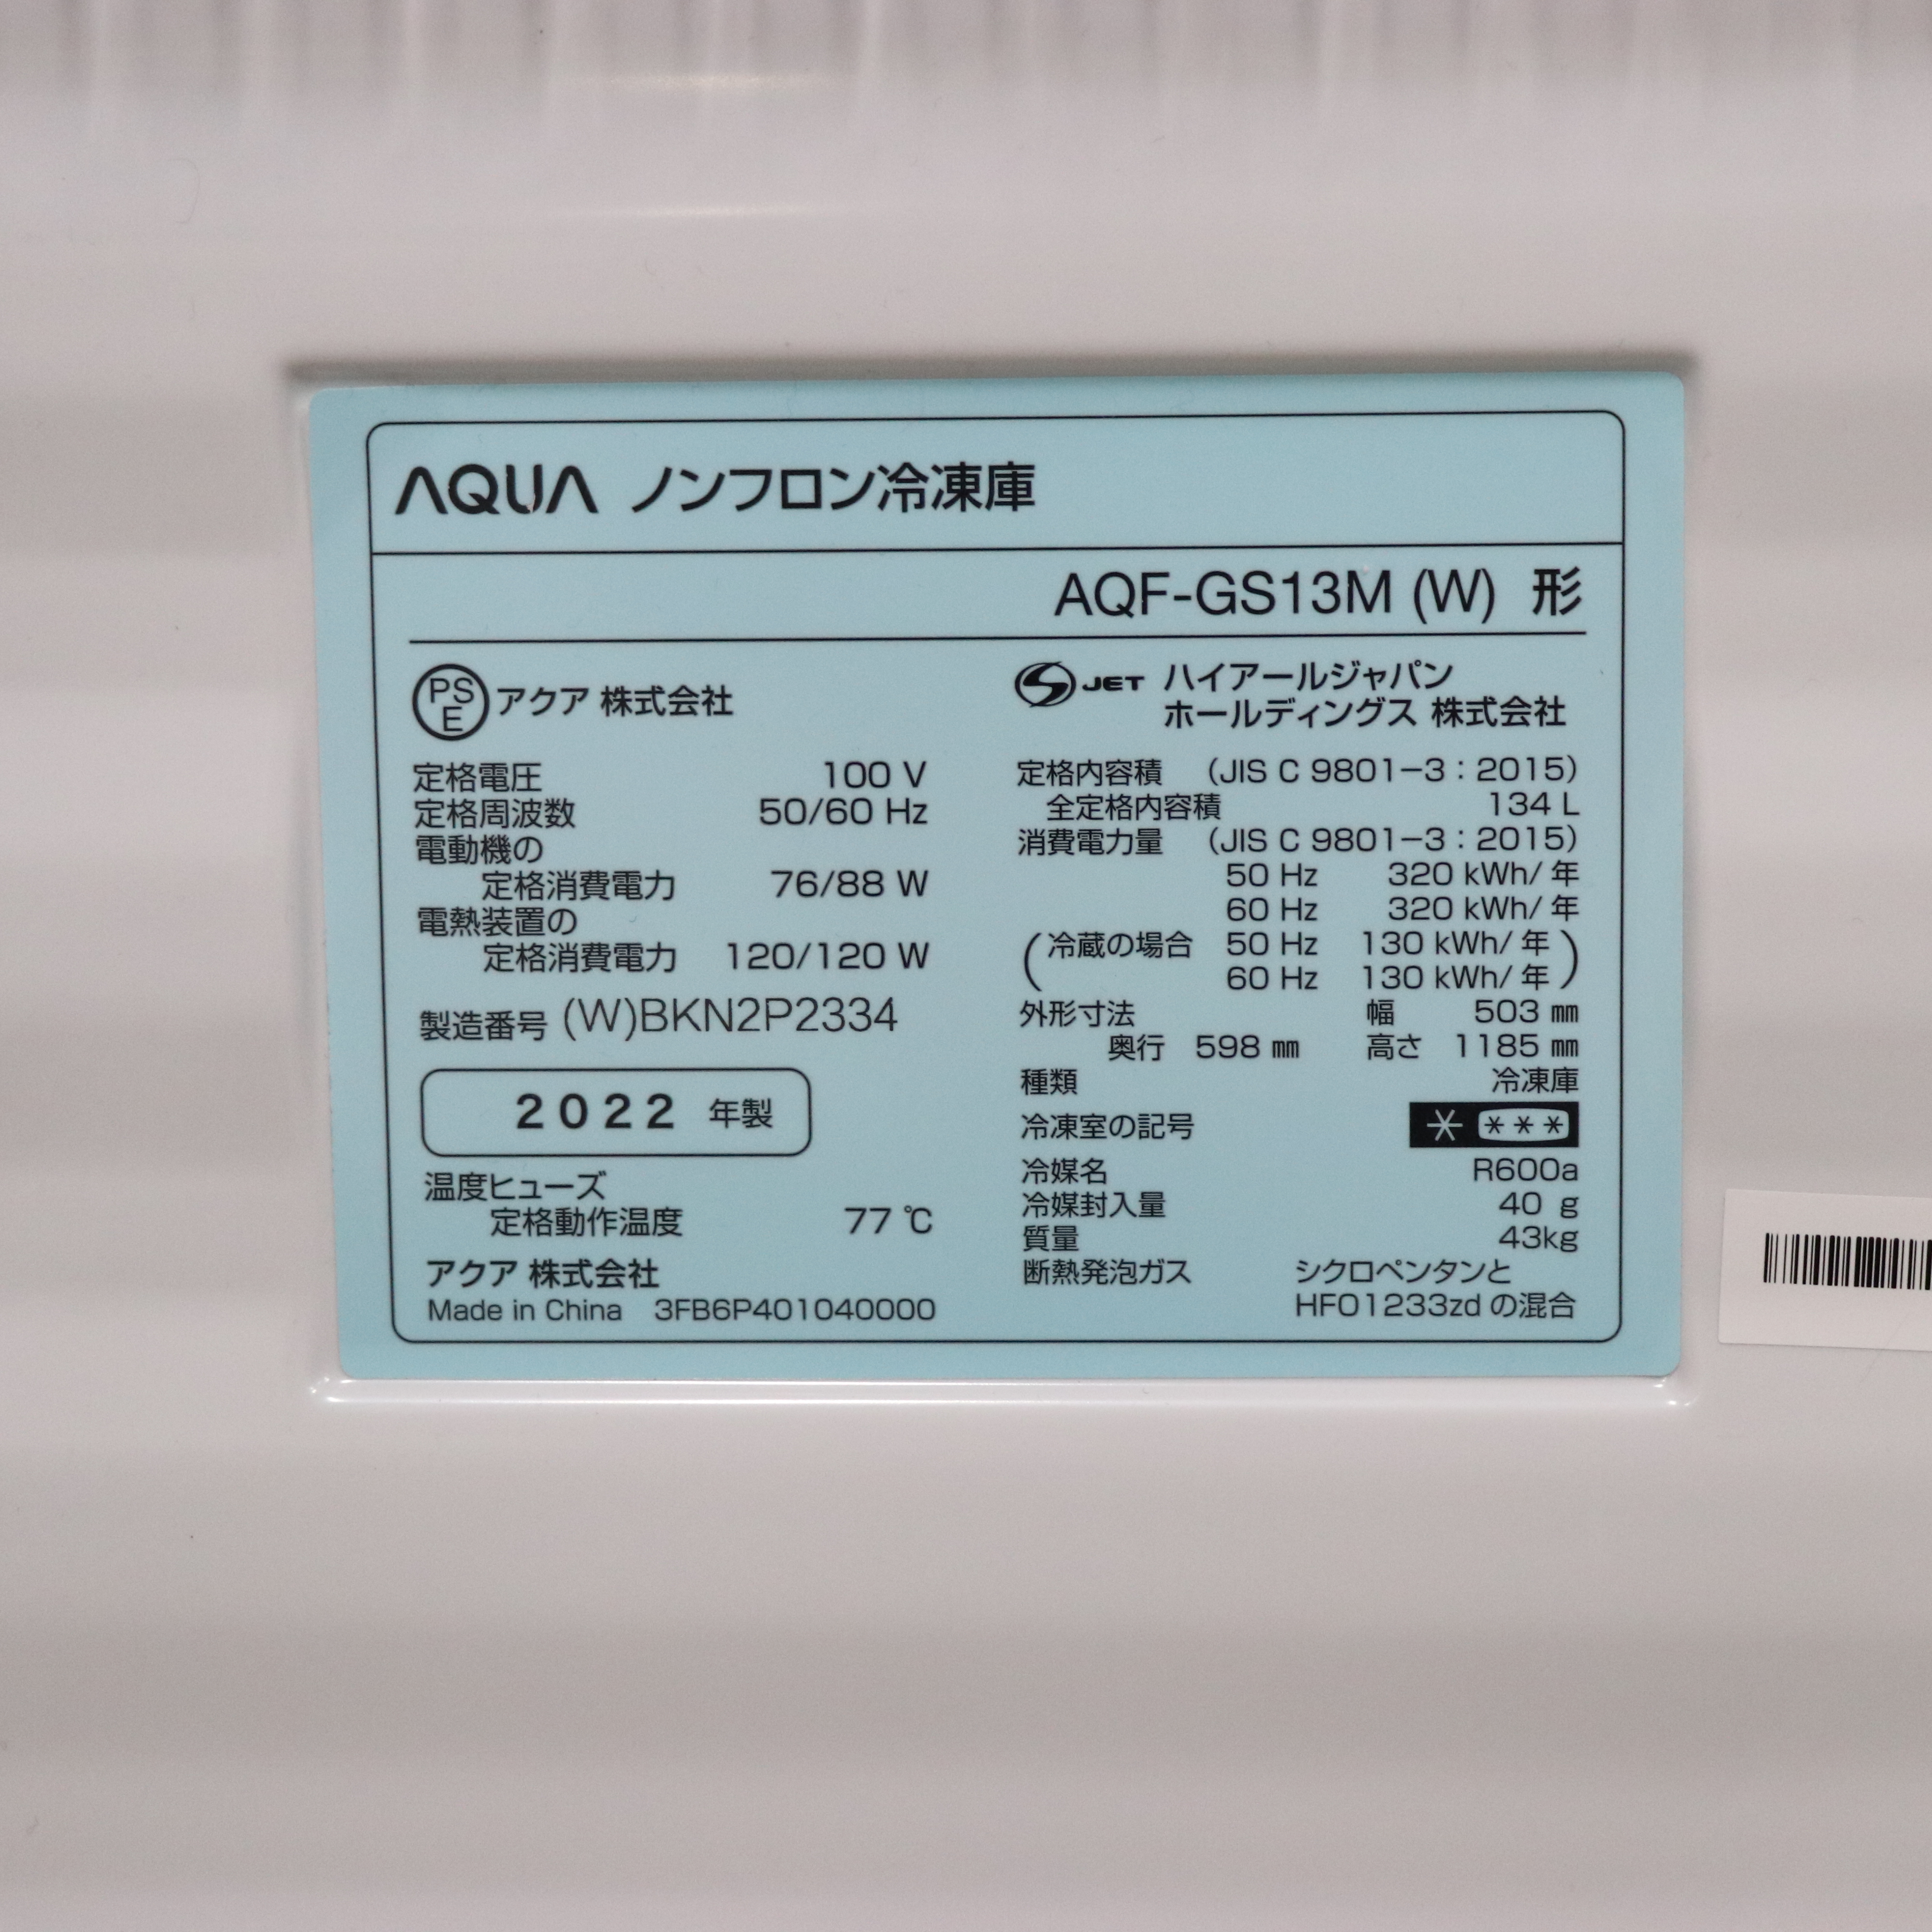 アクア(AQUA) AQF-GS13M-W(クリスタルホワイト) 1ドア冷凍庫 右開き 134L 幅503mm - 2